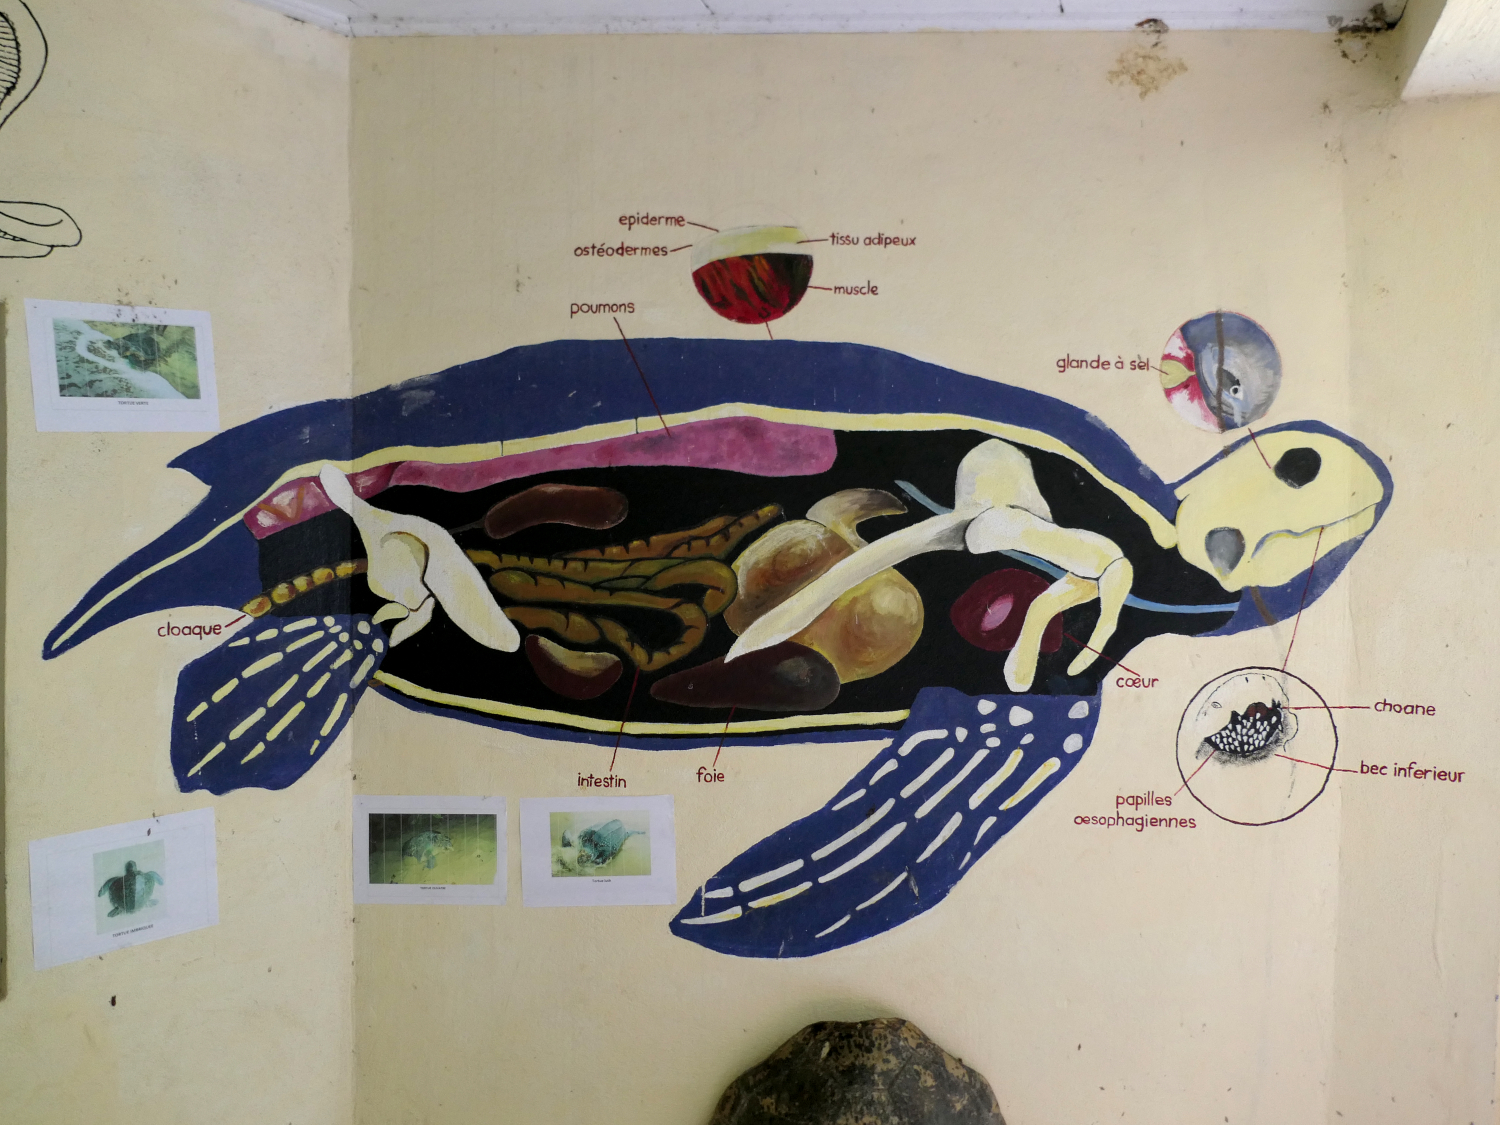 La tortue luth dessinée sur le mur du petit musée de l’association Tube awu est la plus grande tortue marine du monde © Globe Reporters